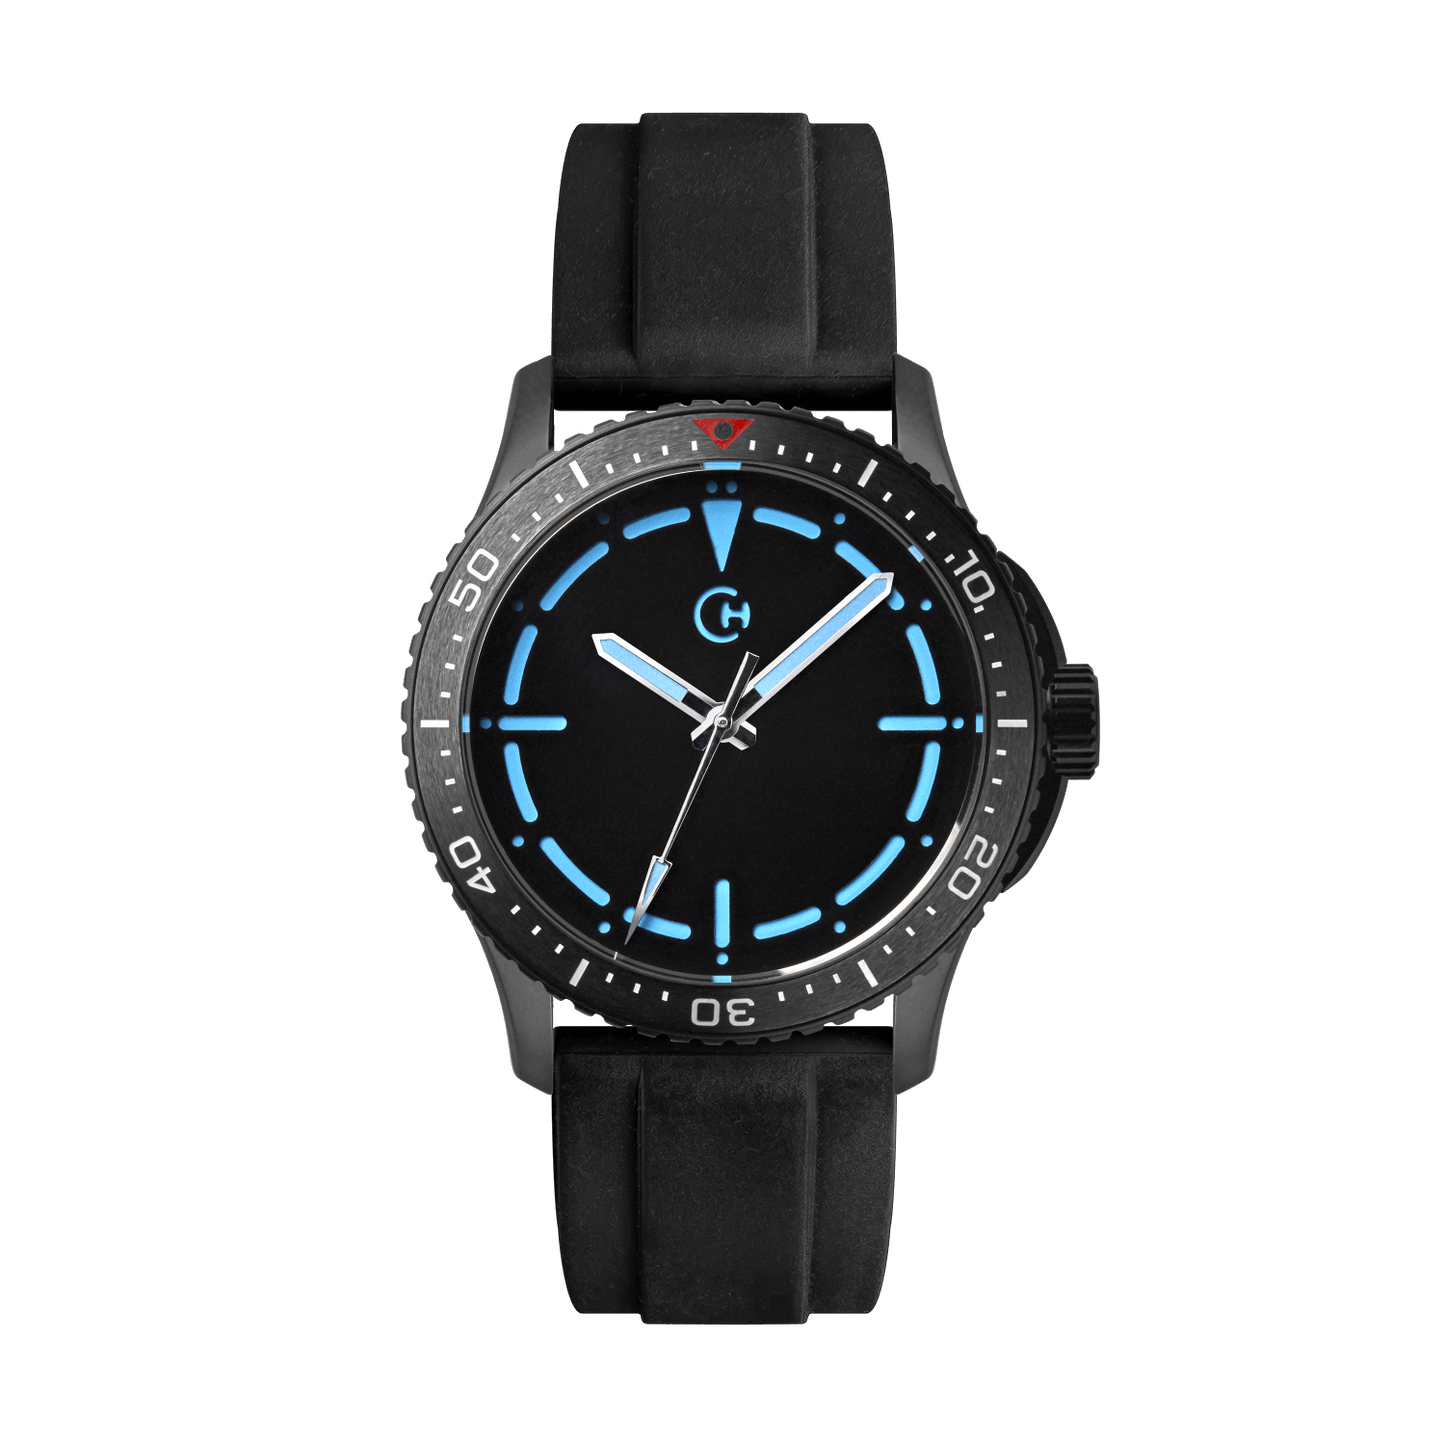 SeaQuest Dive černý gumový řemínek, 22mm, rychloupínací stěžejka, potápěčské hodinky Chronotechna modrý číselník, DLC pouzdro